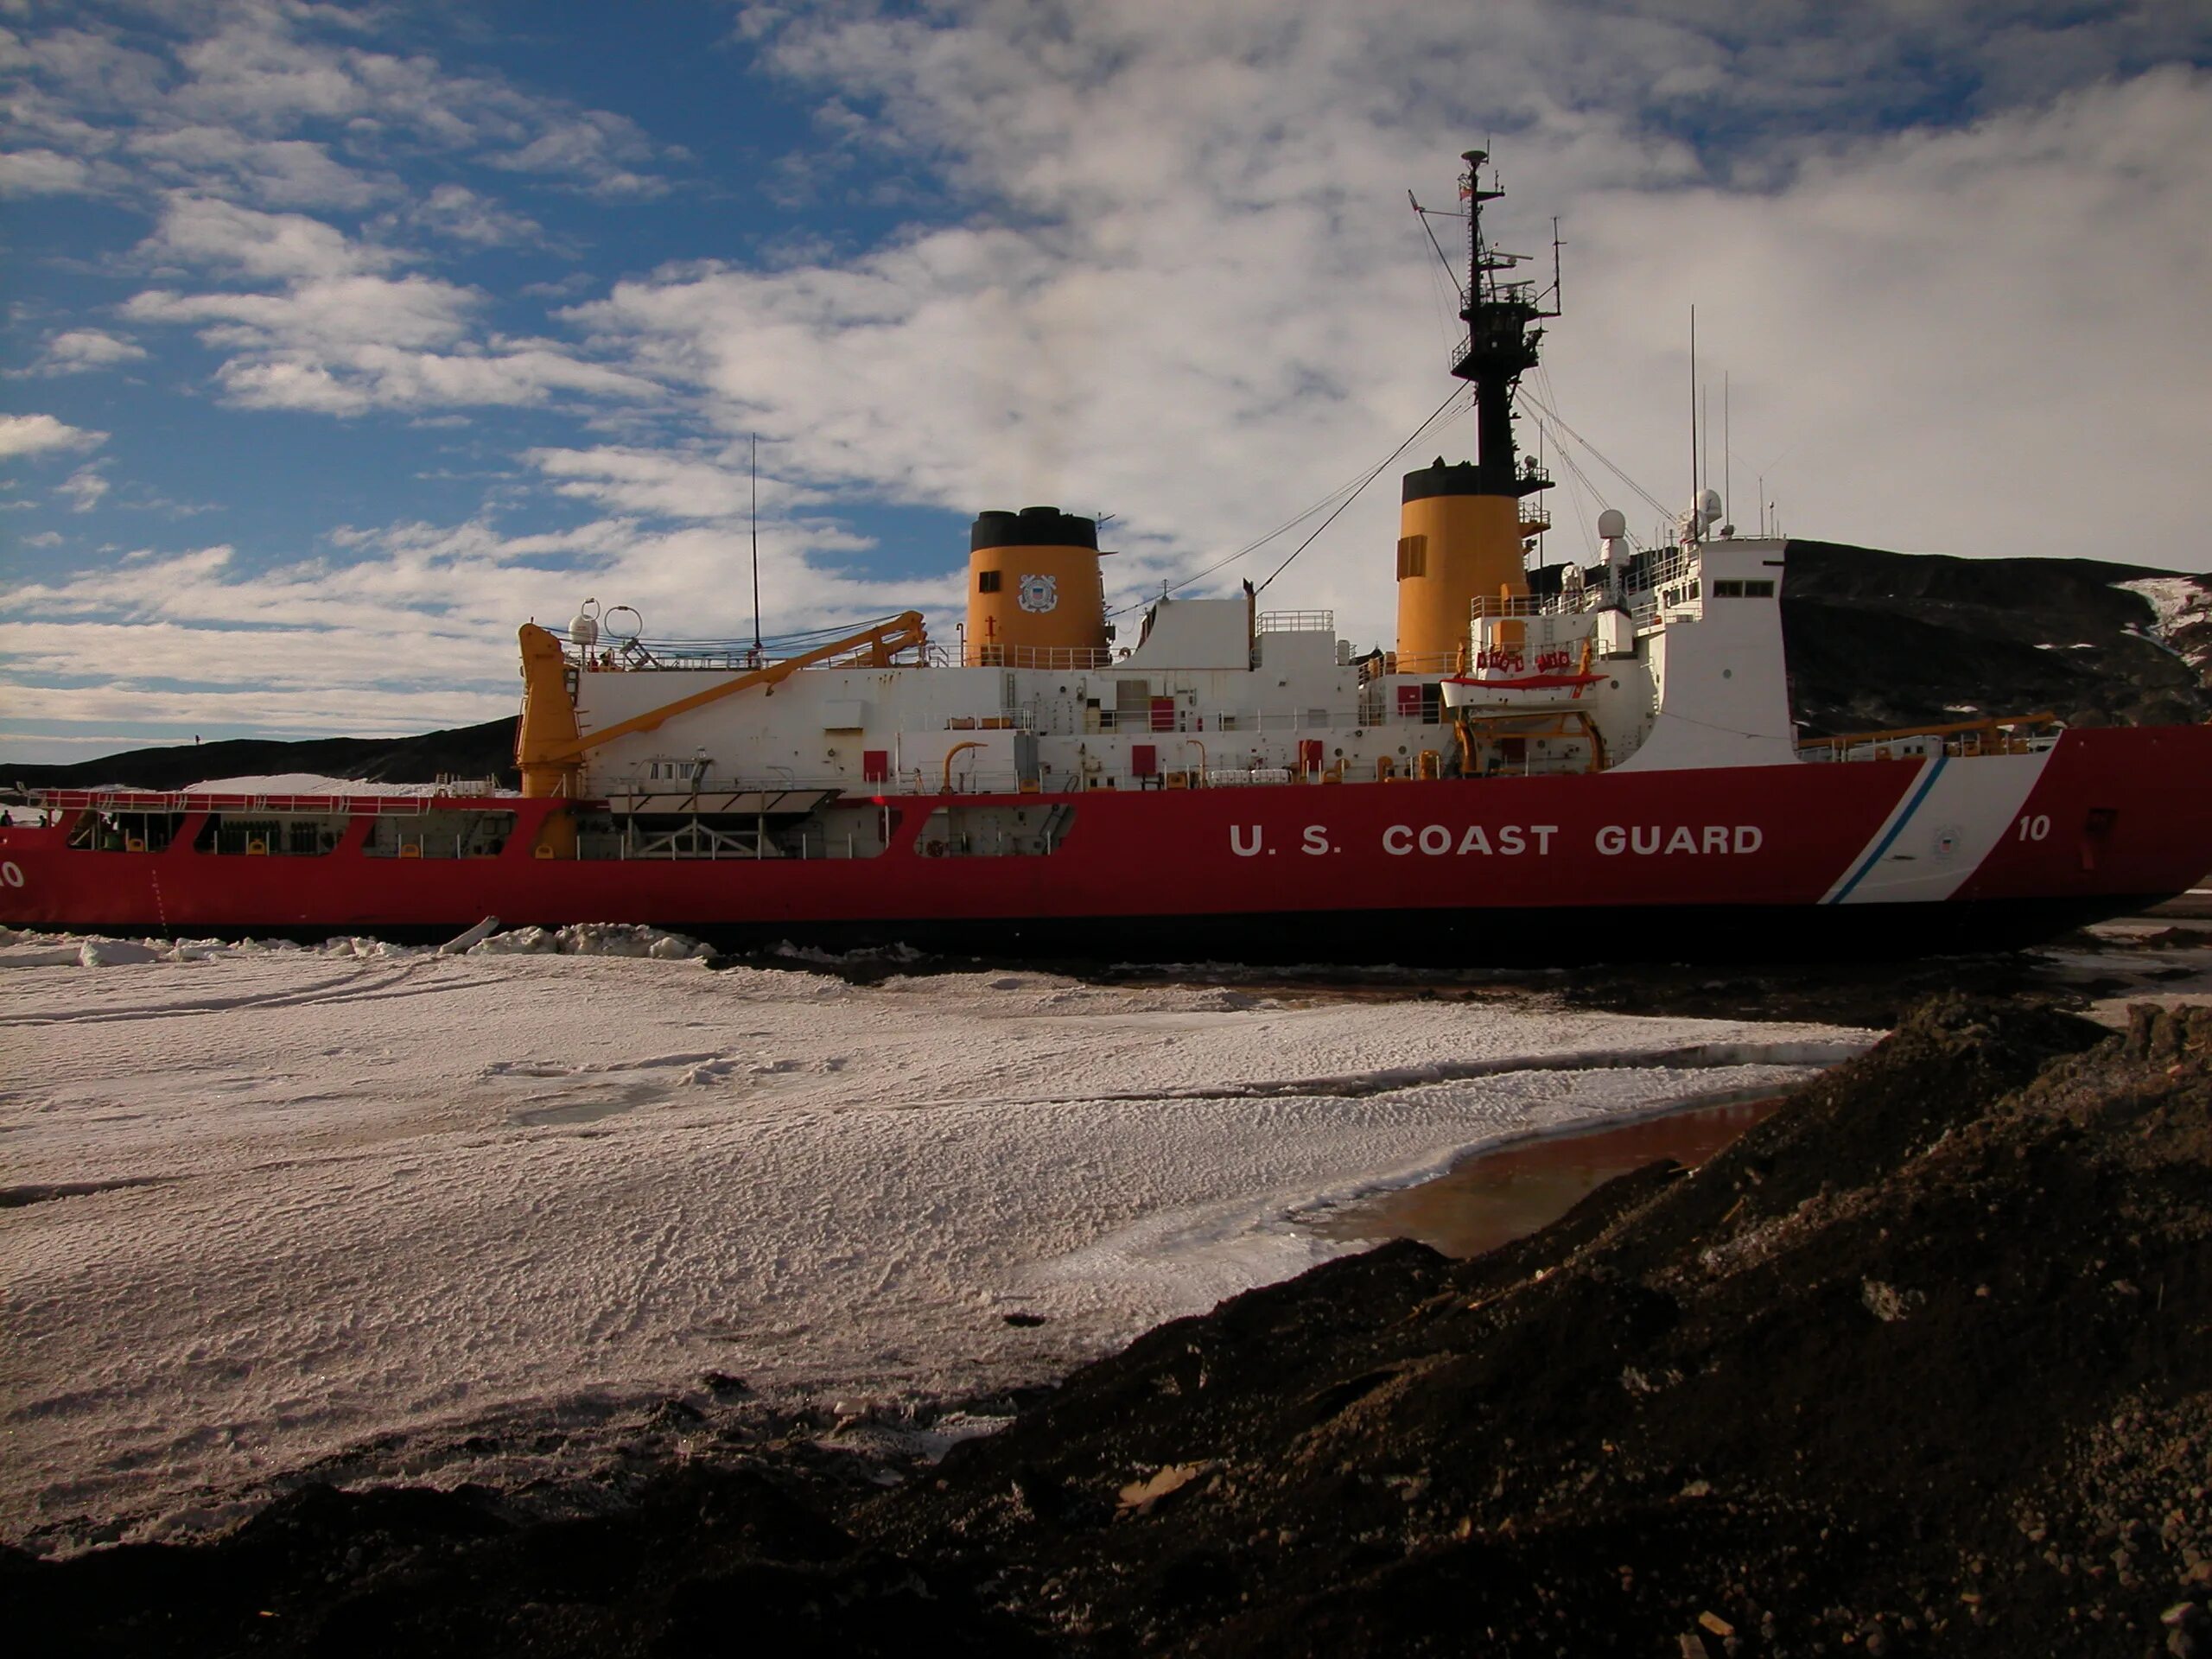 USCGC Polar Star. Американский ледокольный флот. Американский ледокол Polar Star. Ледокольный флот Канады и США. Polar star